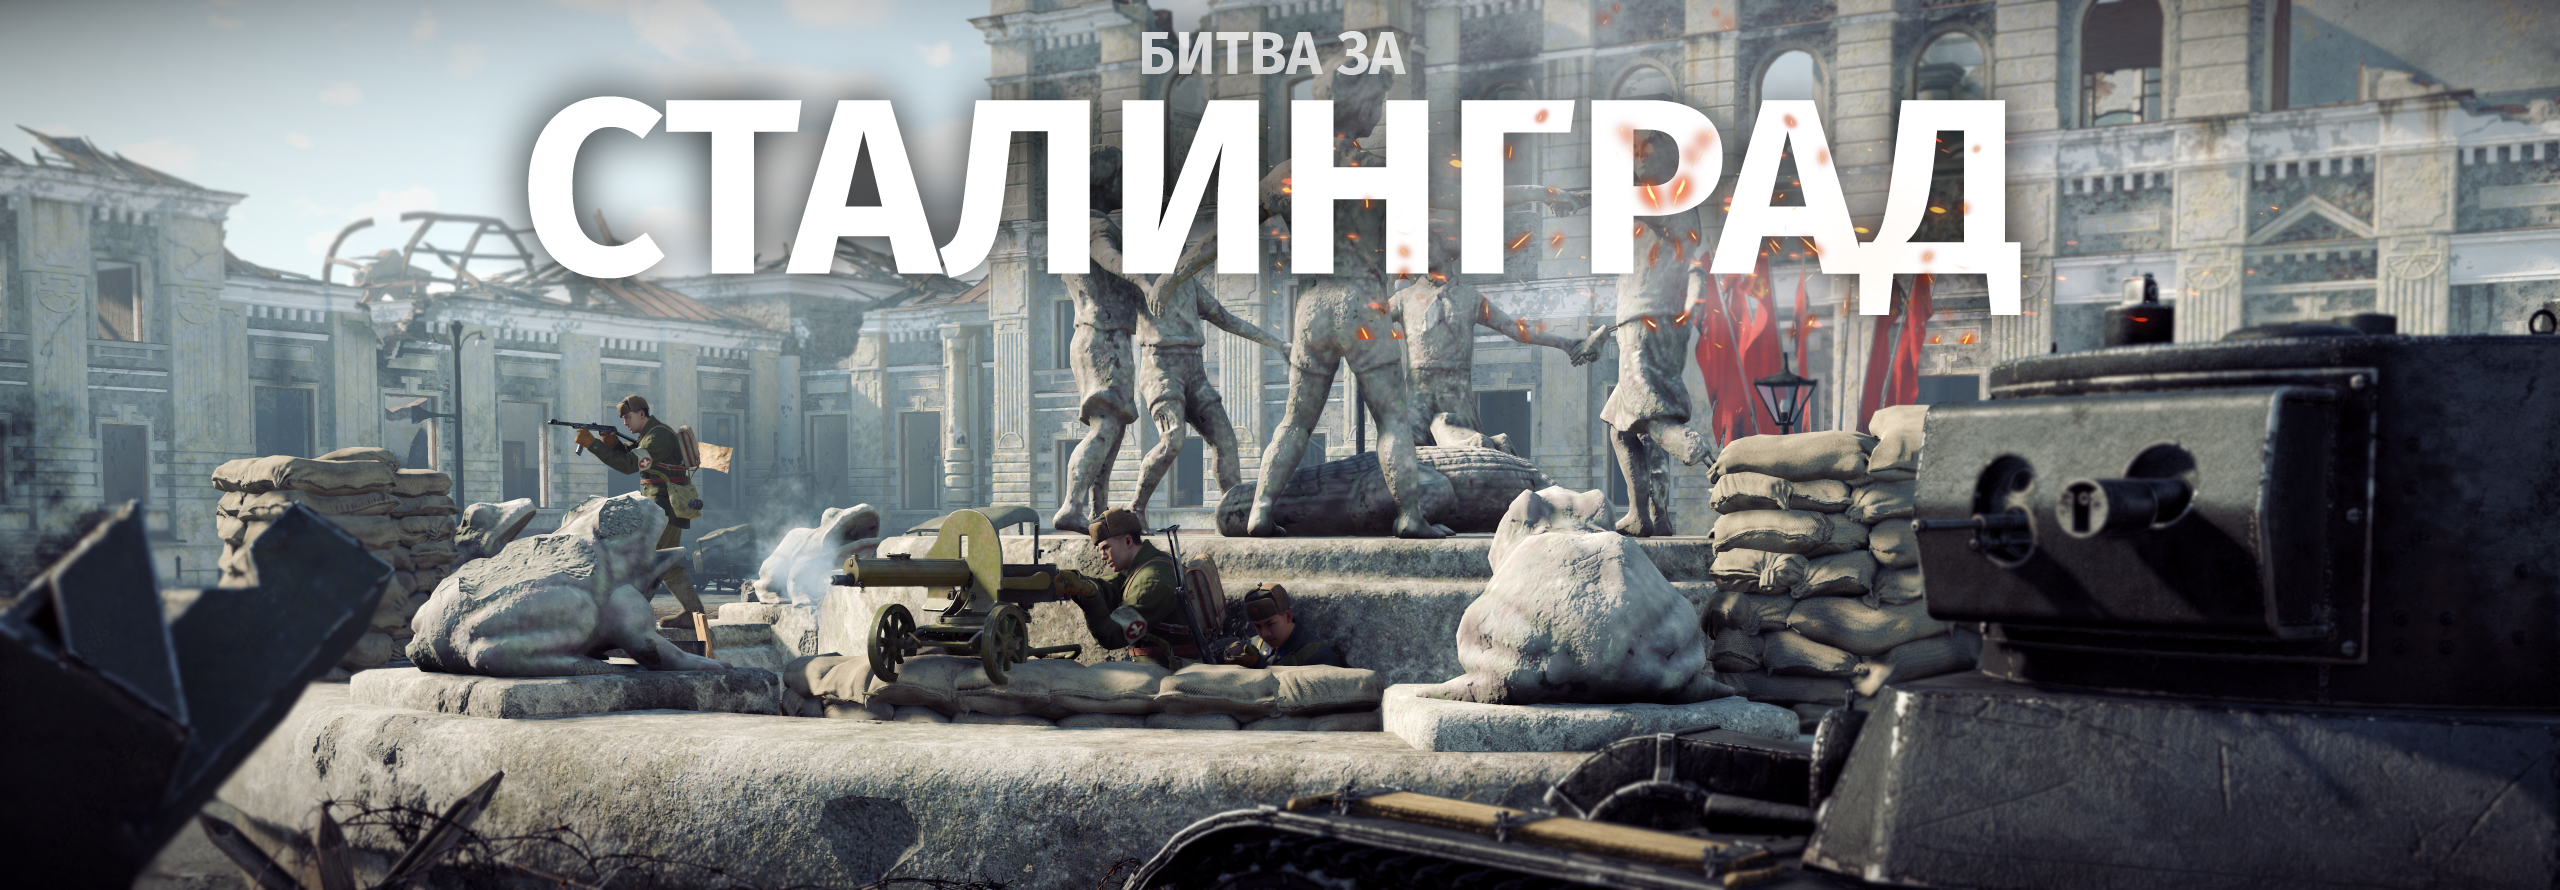 Вступайте в «Битву за Сталинград»! - Новости - Enlisted